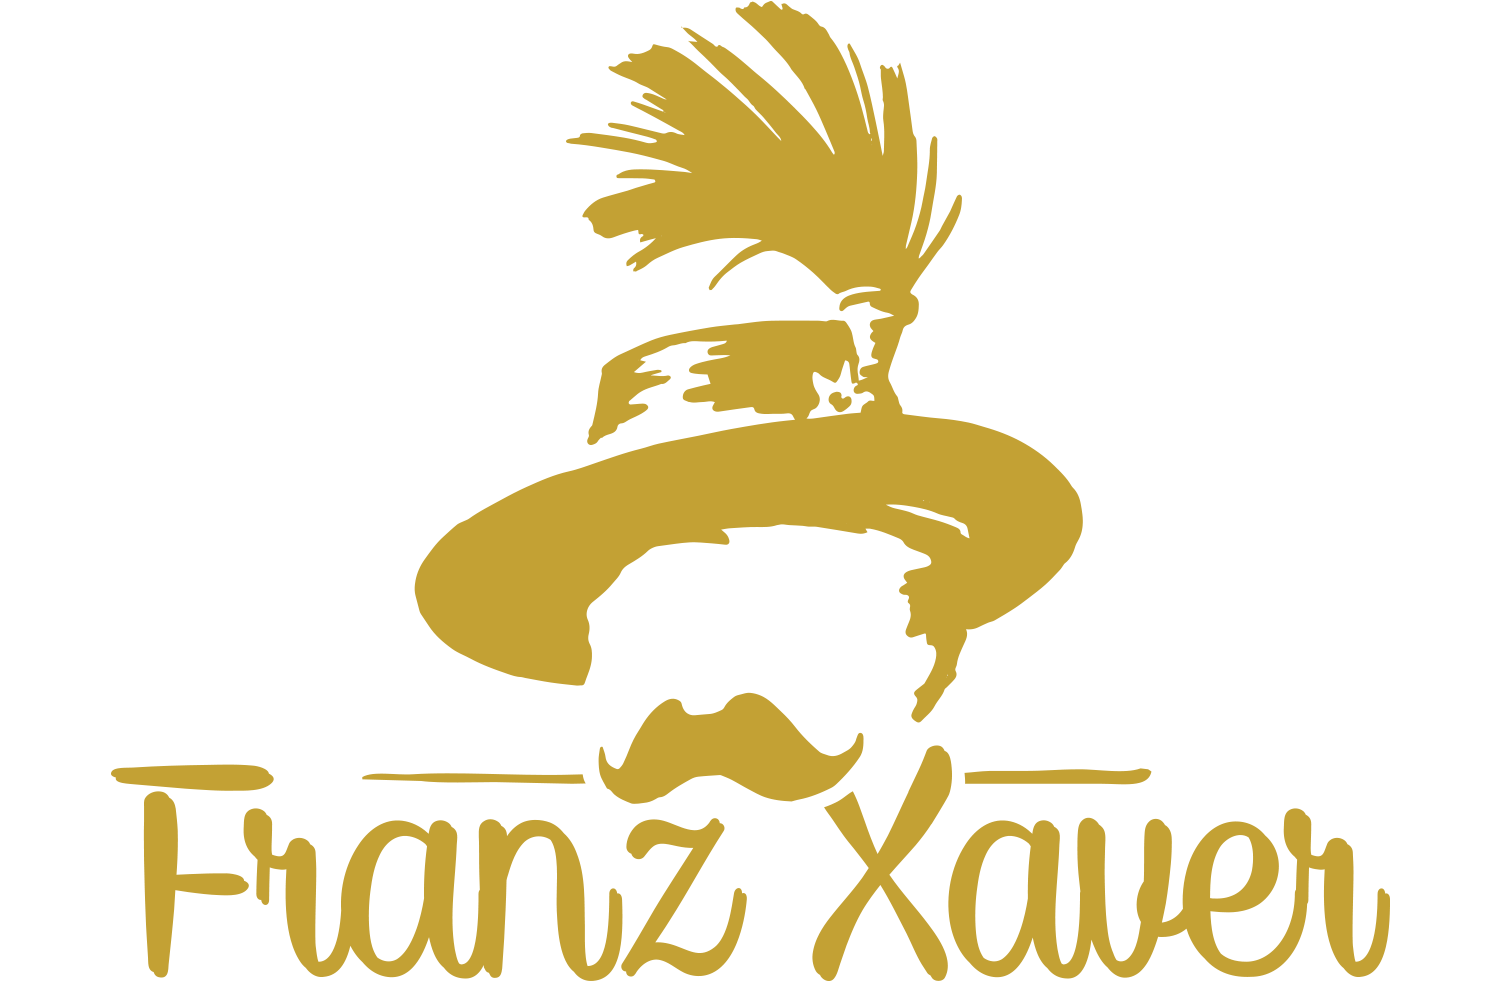 Logo der Gastronomie Wirtshaus Franz Xaver München. Der stilisierte Kopf von Franz Xaver mit Schnurrbart und Hut und dem Schriftzug "Franz Xaver" darunter. Das Logo ist in gold gehalten.